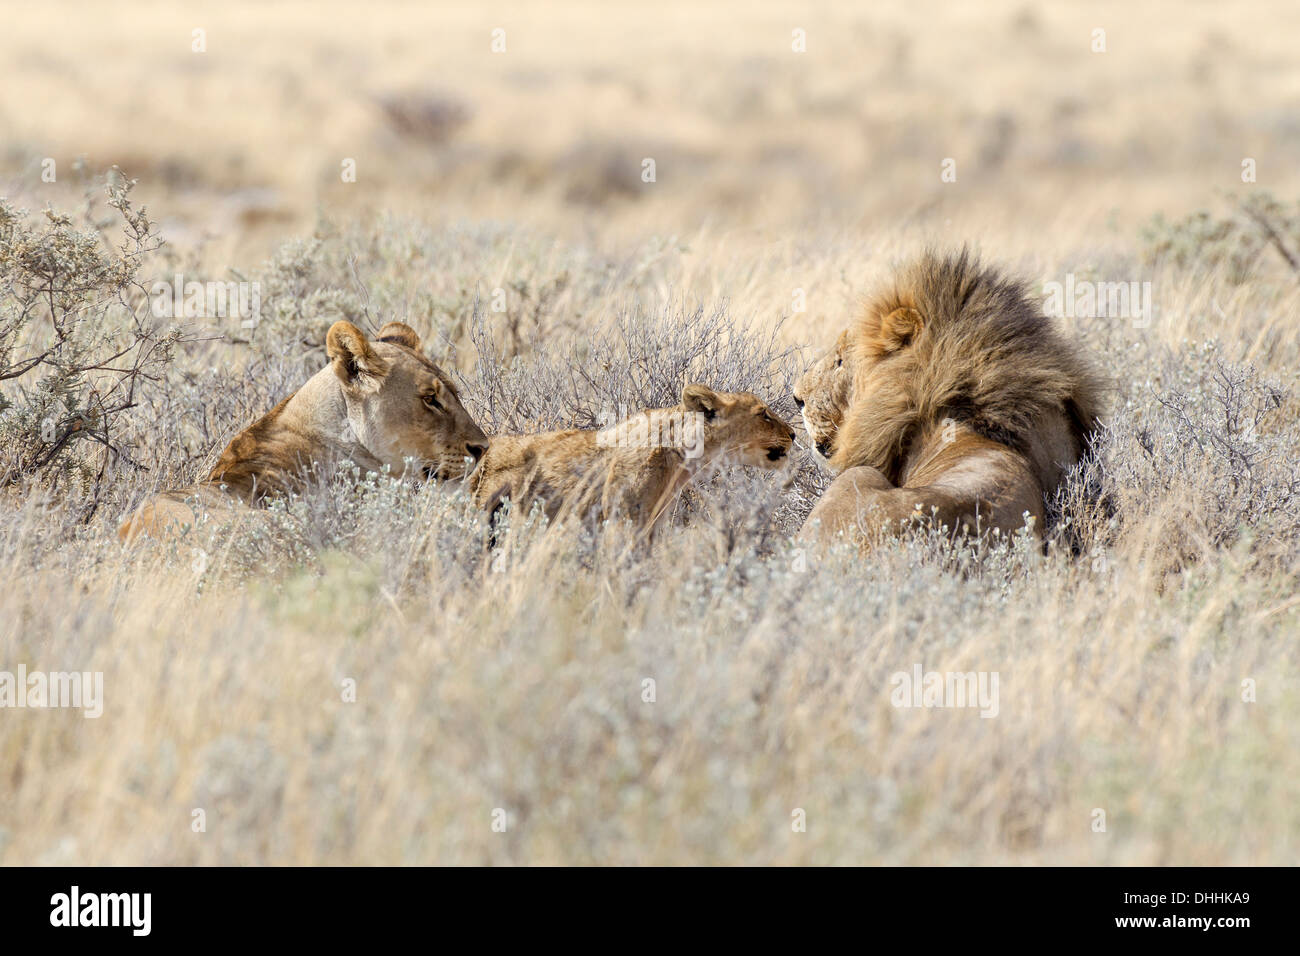 Lion (Panthera leo), famille de lions couchés dans l'herbe haute, Etosha National Park, Okaukuejo, région de Kunene, Namibie Banque D'Images